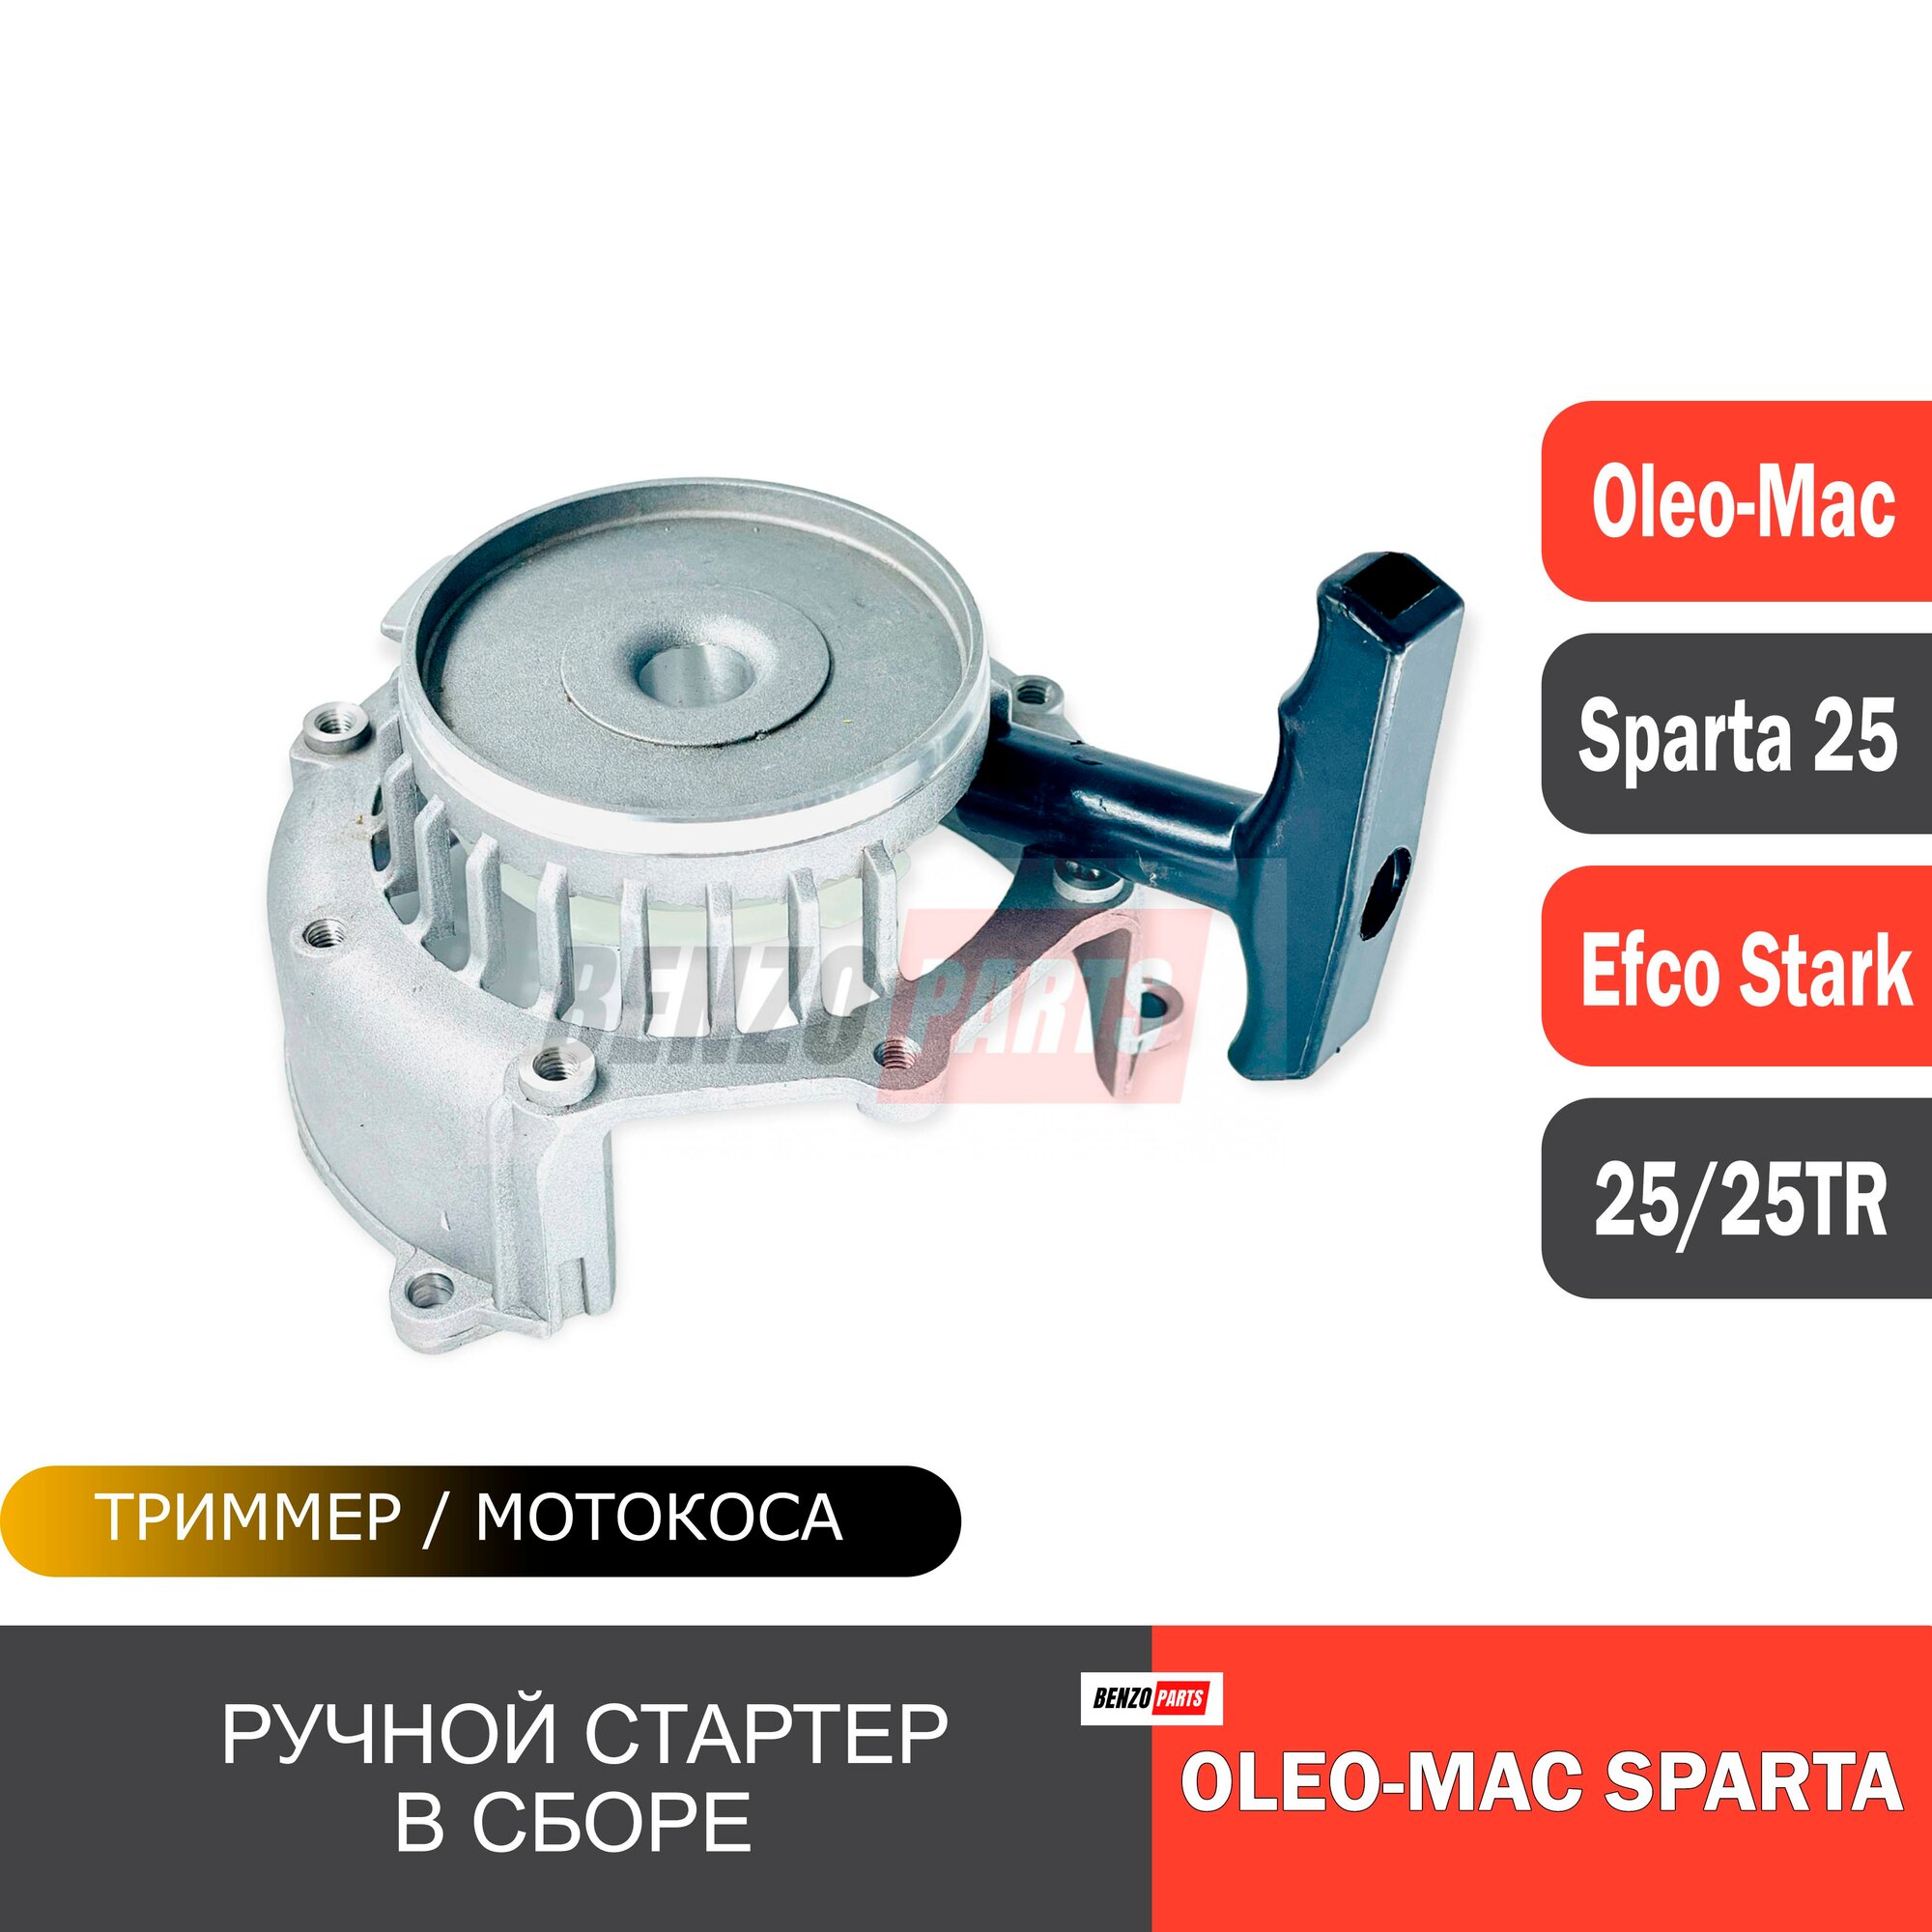 Ручной стартер в сборе для мотокос Efco Stark 25/ 25TR Oleo-Mac Sparta 25/ 25TR